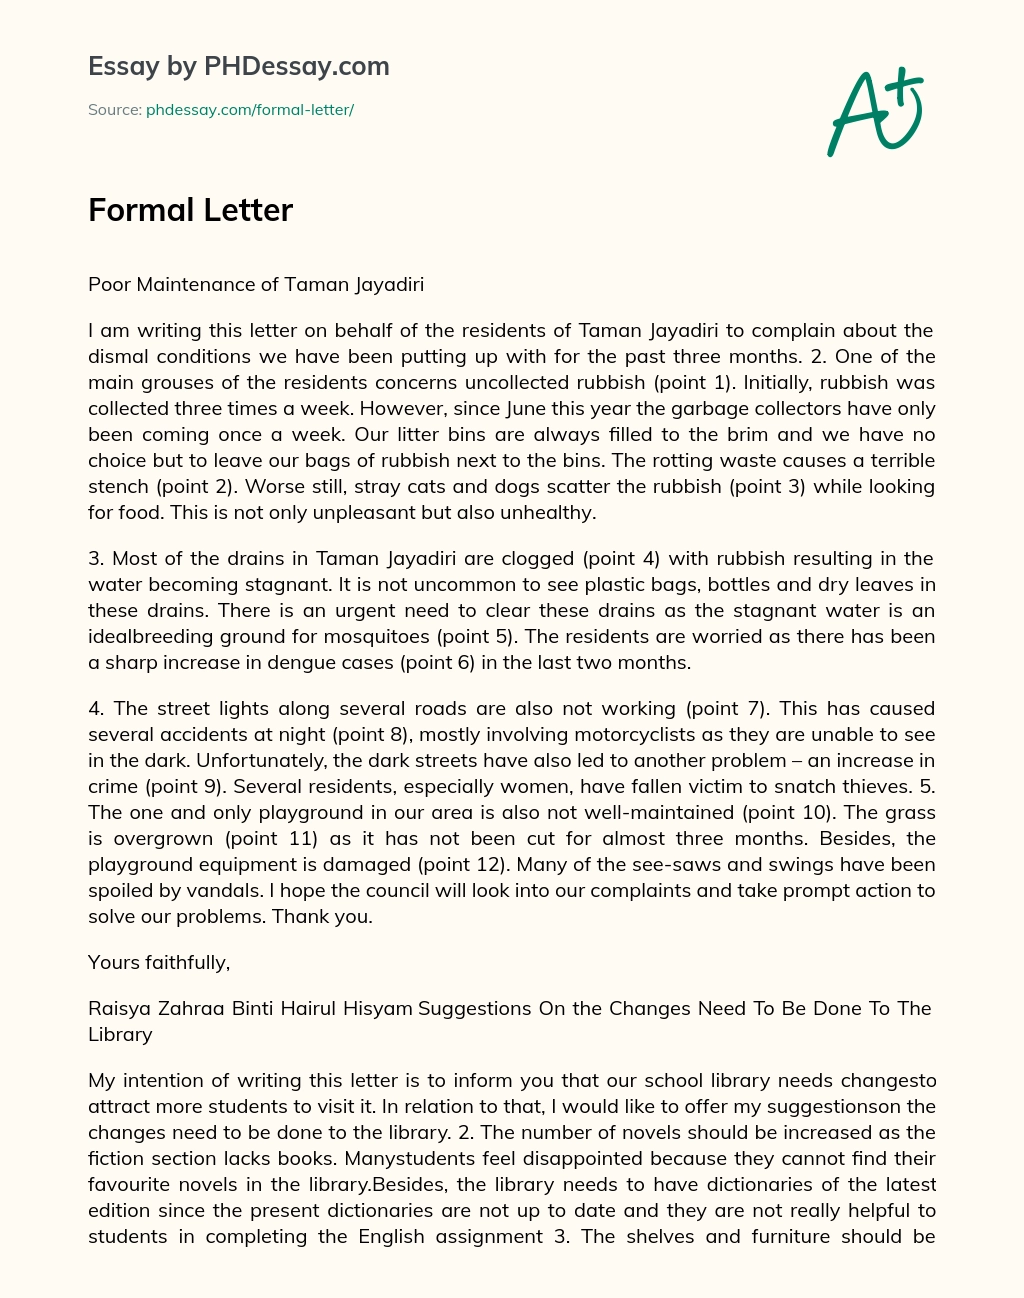 Formal Letter essay